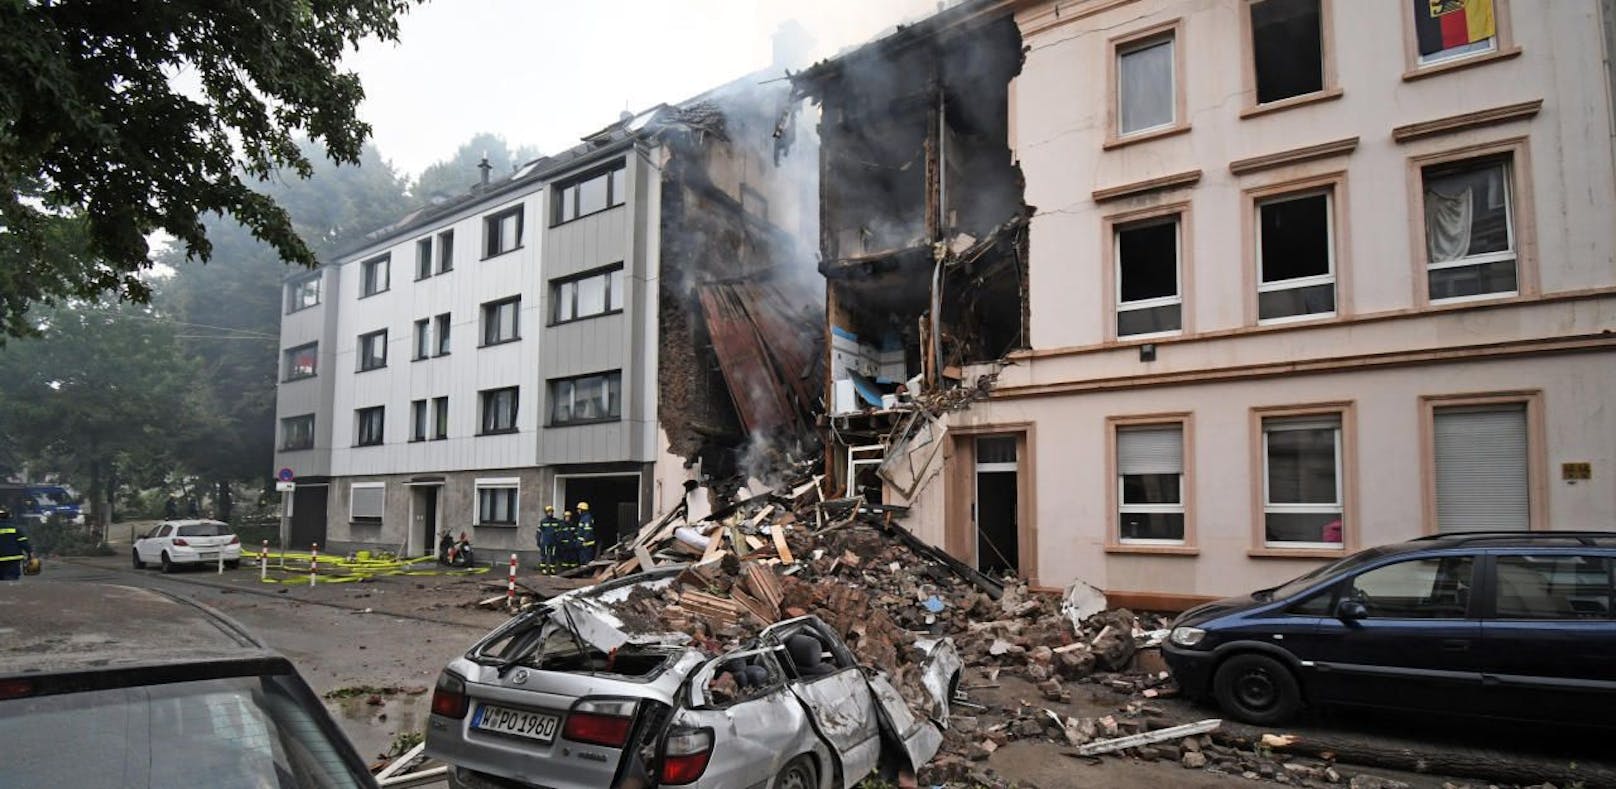 Nordrhein-Westfalen, Wuppertal: Die Trümmer eines Hauses, in dem es in der Nacht eine Explosion gegeben hat, liegen auf der Straße. 